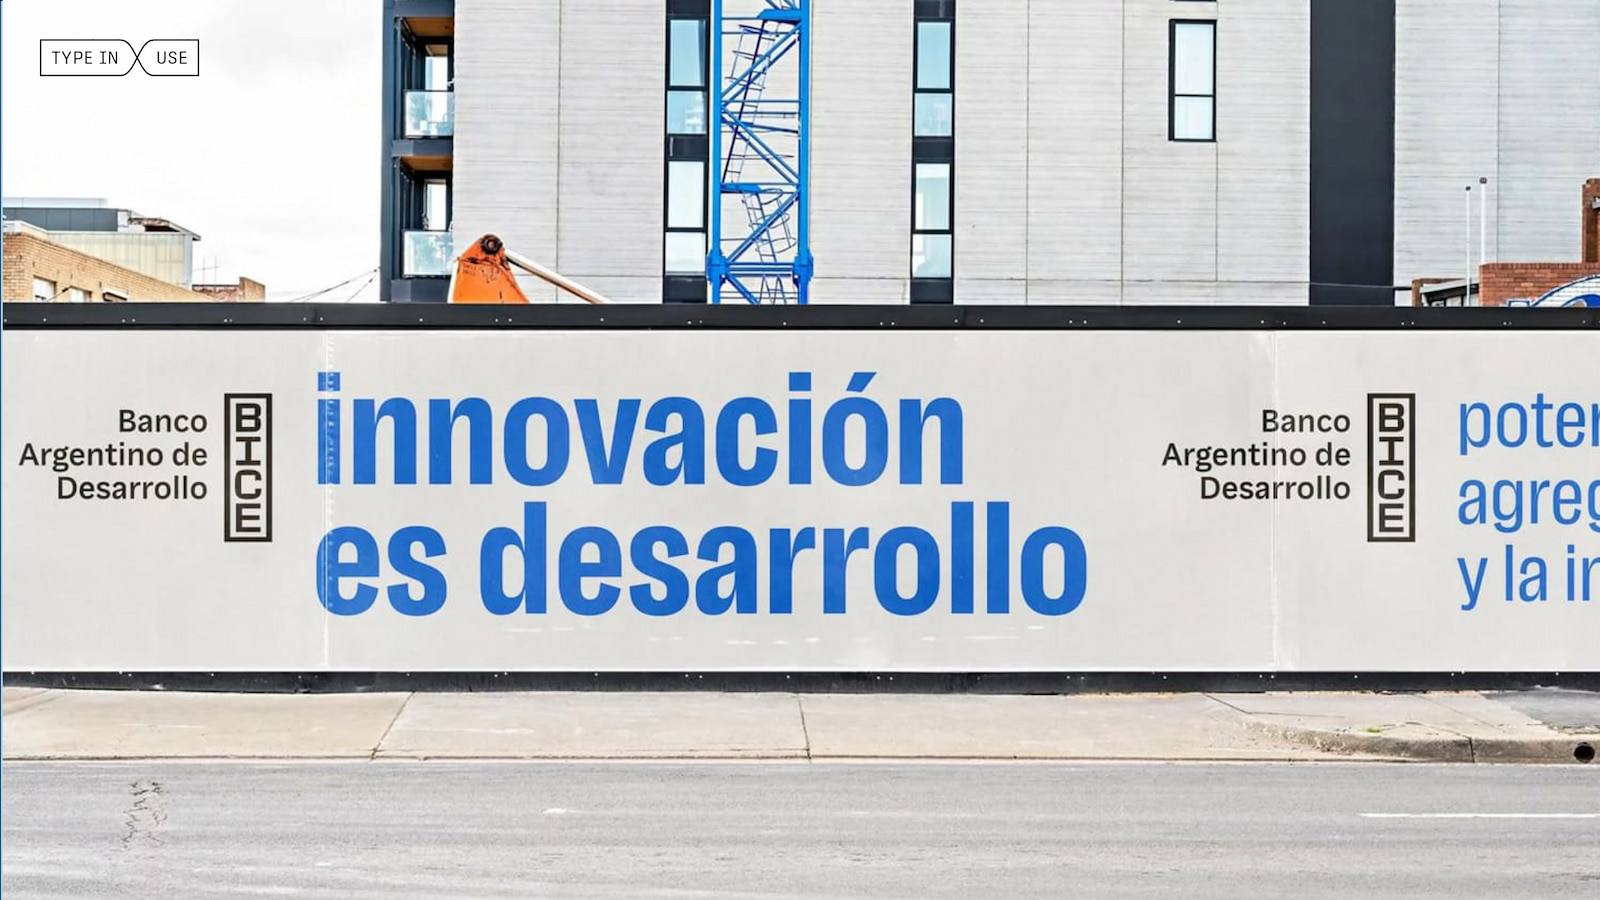 Lektorat in use in Banco Argentino de Desarrollo